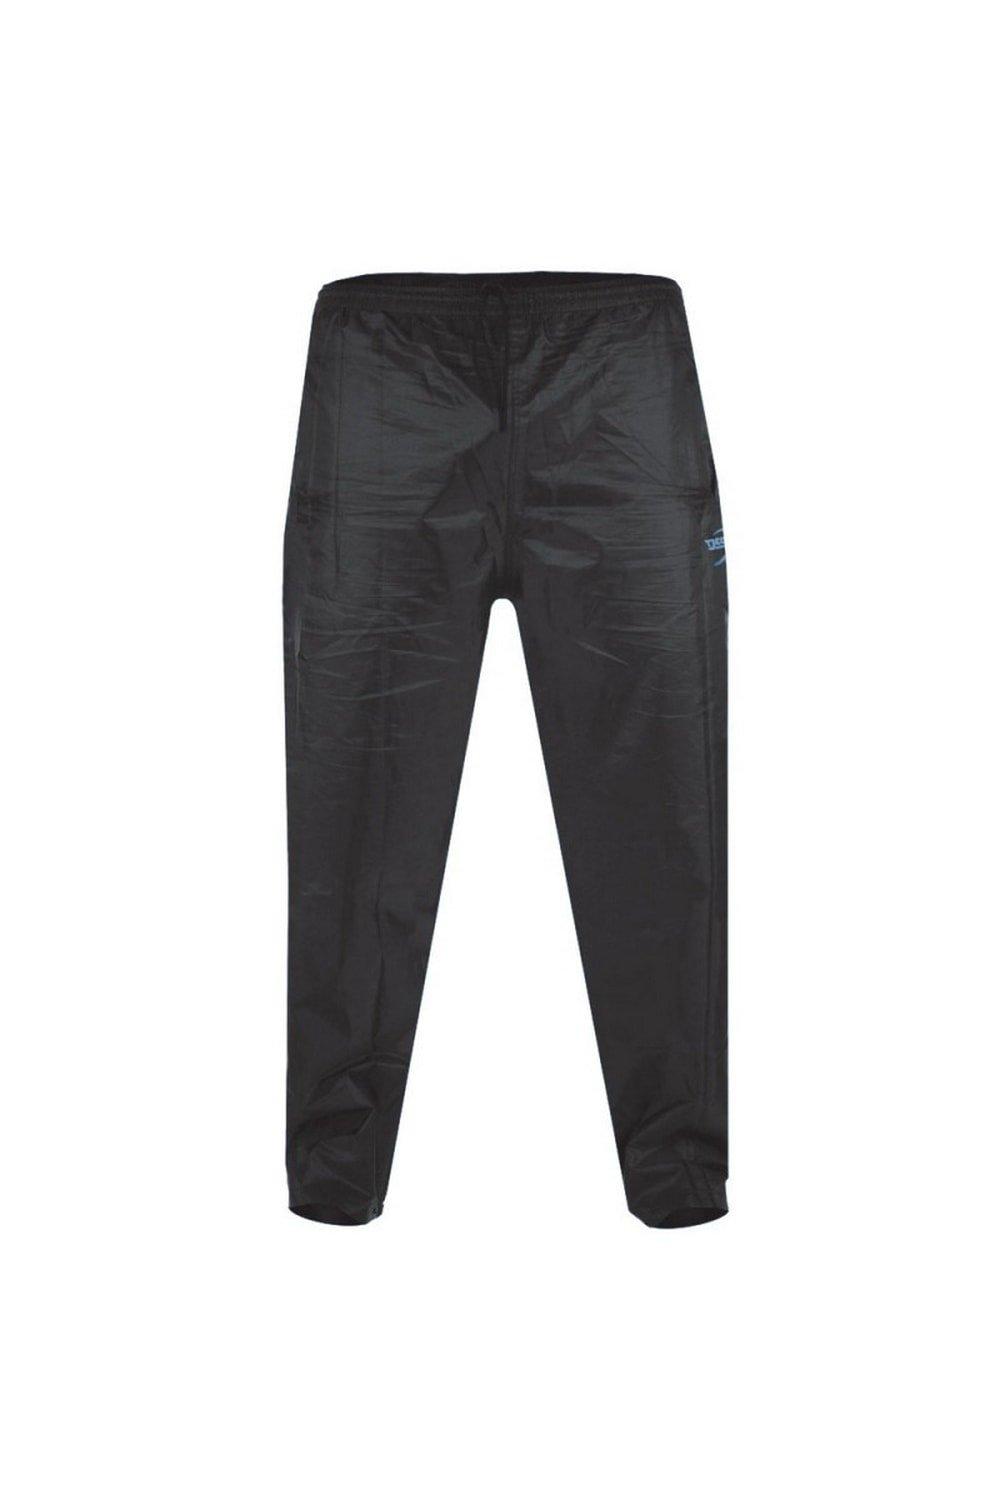 Непромокаемые брюки Elba Kingsize D555 Packaway Duke Clothing, черный